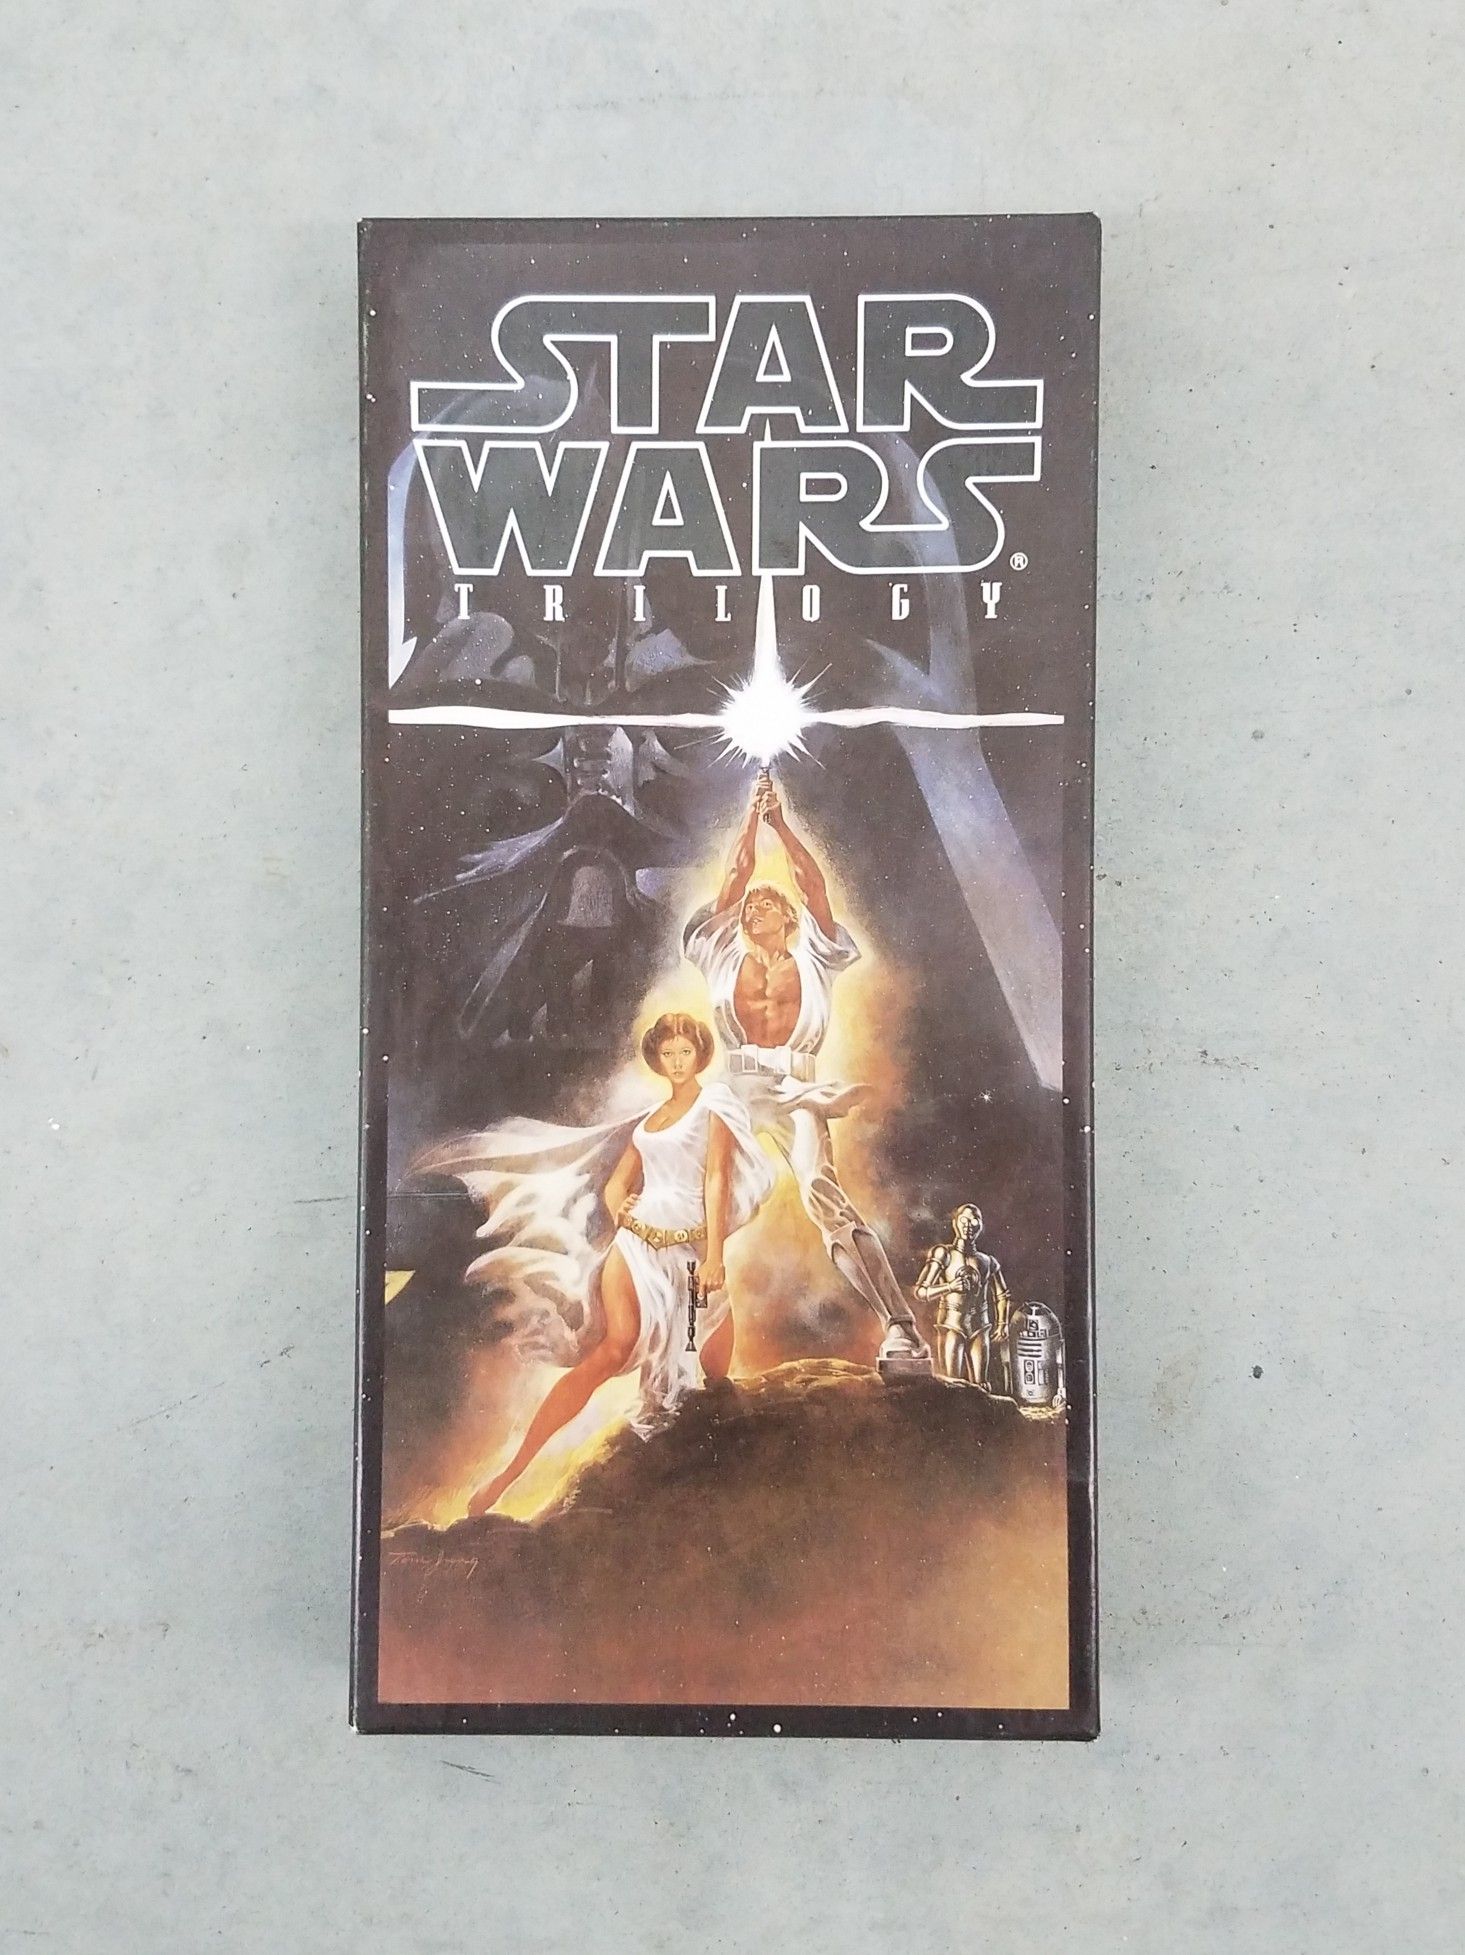 Vintage Star Wars Trilogy 4 CD Set